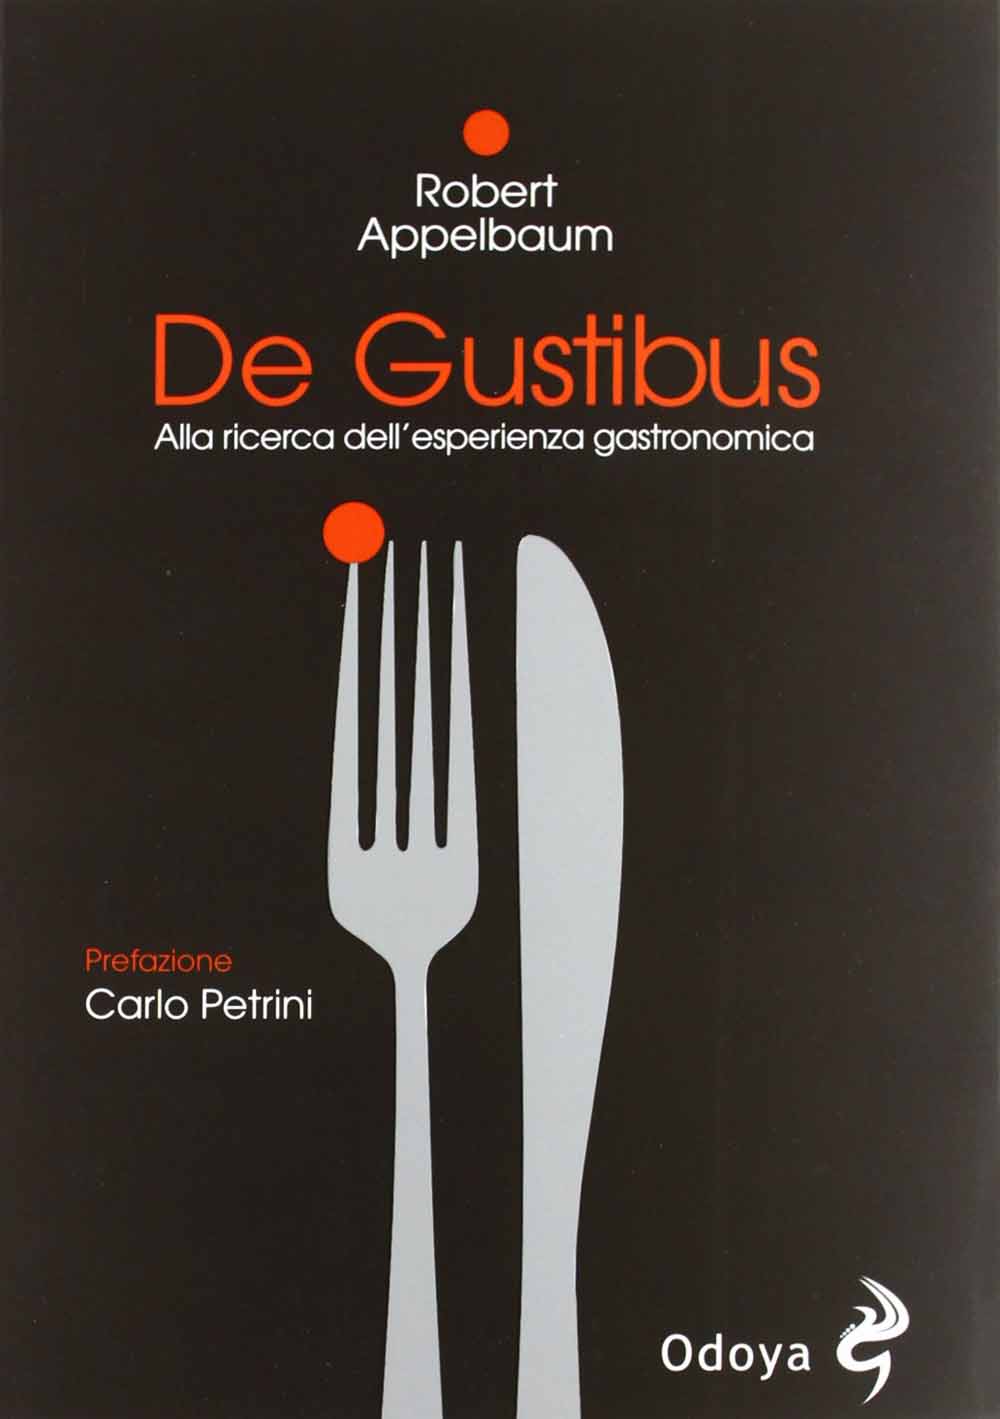 Libri Robert Appelbaum - De Gustibus. Alla Ricerca Dell'Esperienza Gastronomica NUOVO SIGILLATO, EDIZIONE DEL 25/10/2012 SUBITO DISPONIBILE